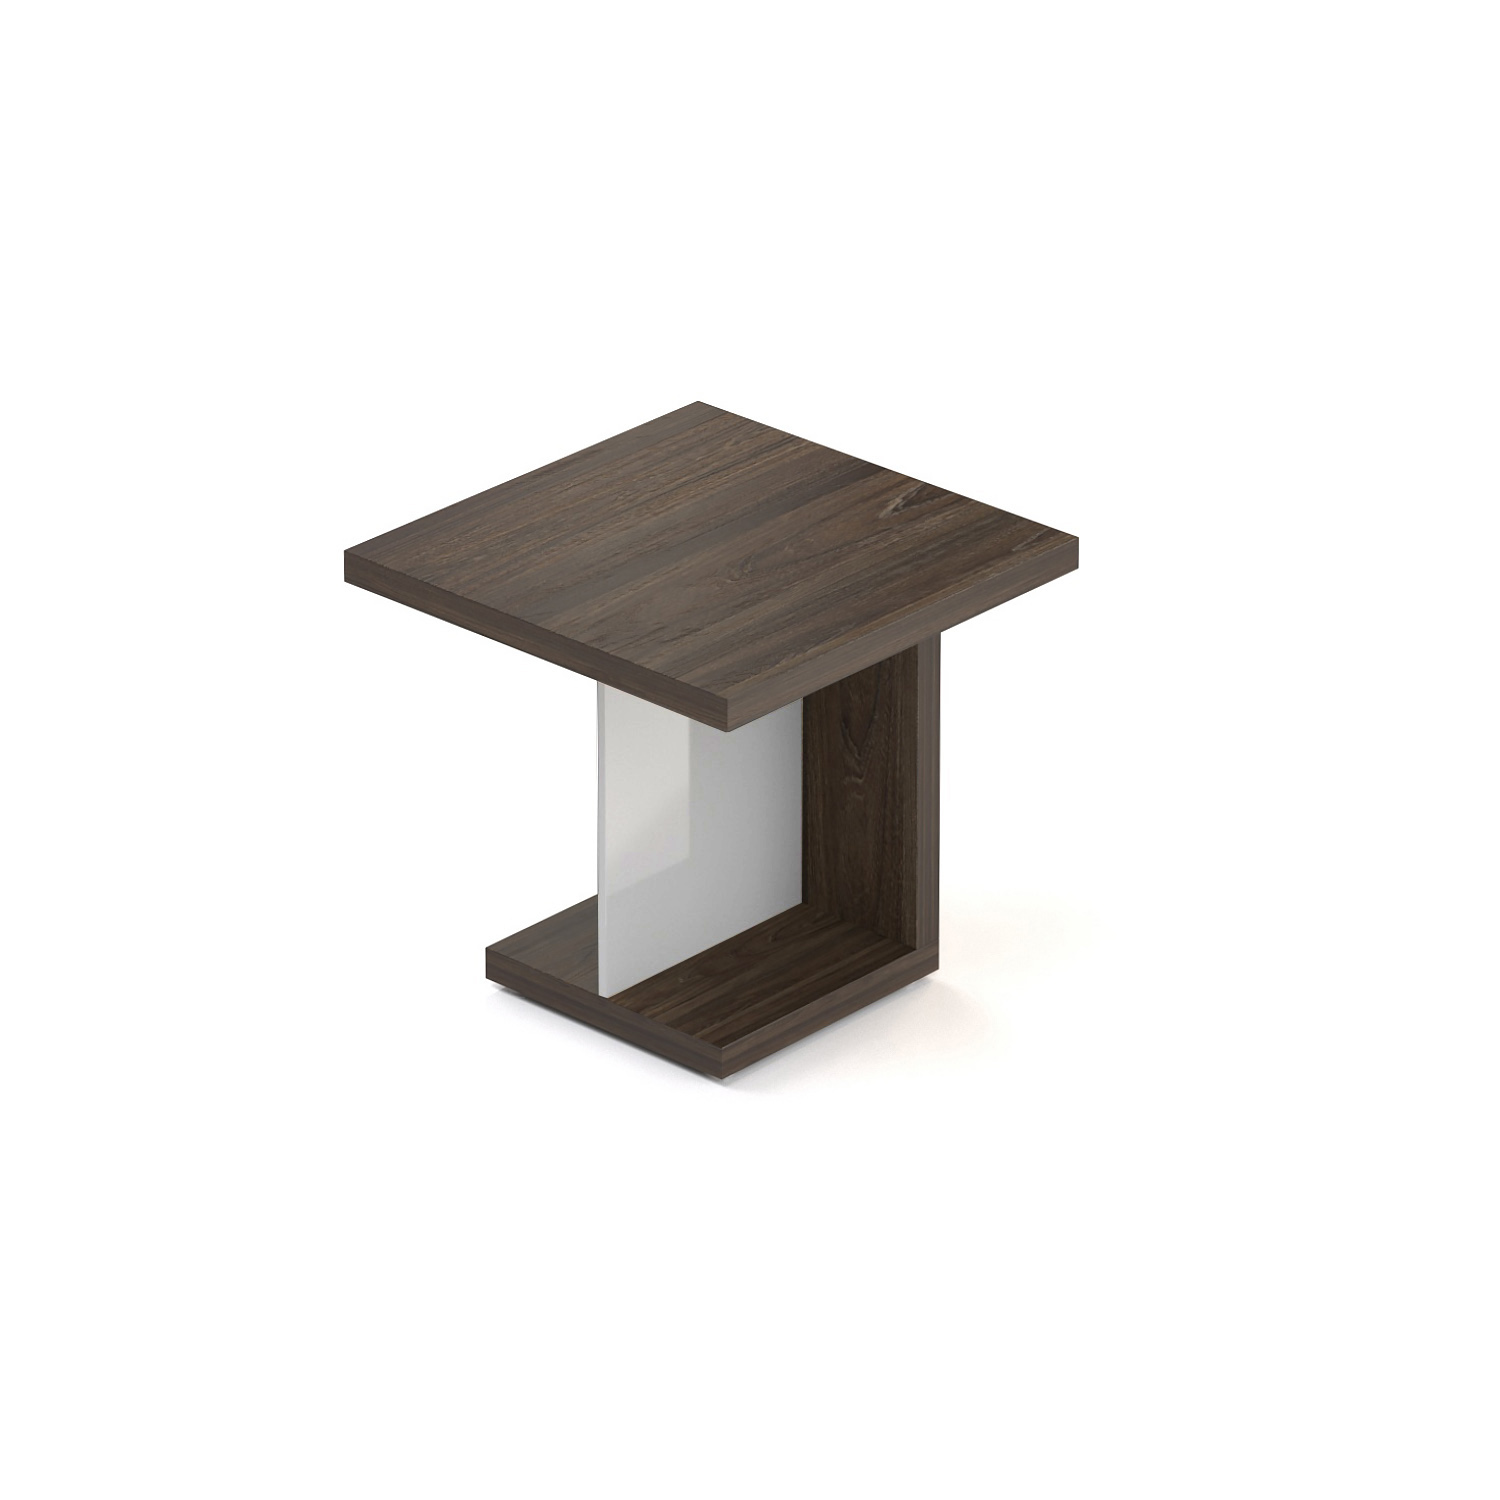 Manažerský konferenční stolek SOLID, čtvercový 120x120cm (Manažerský konferenční stolek SOLID, čtvercový 120x120cm, výška 75cm)